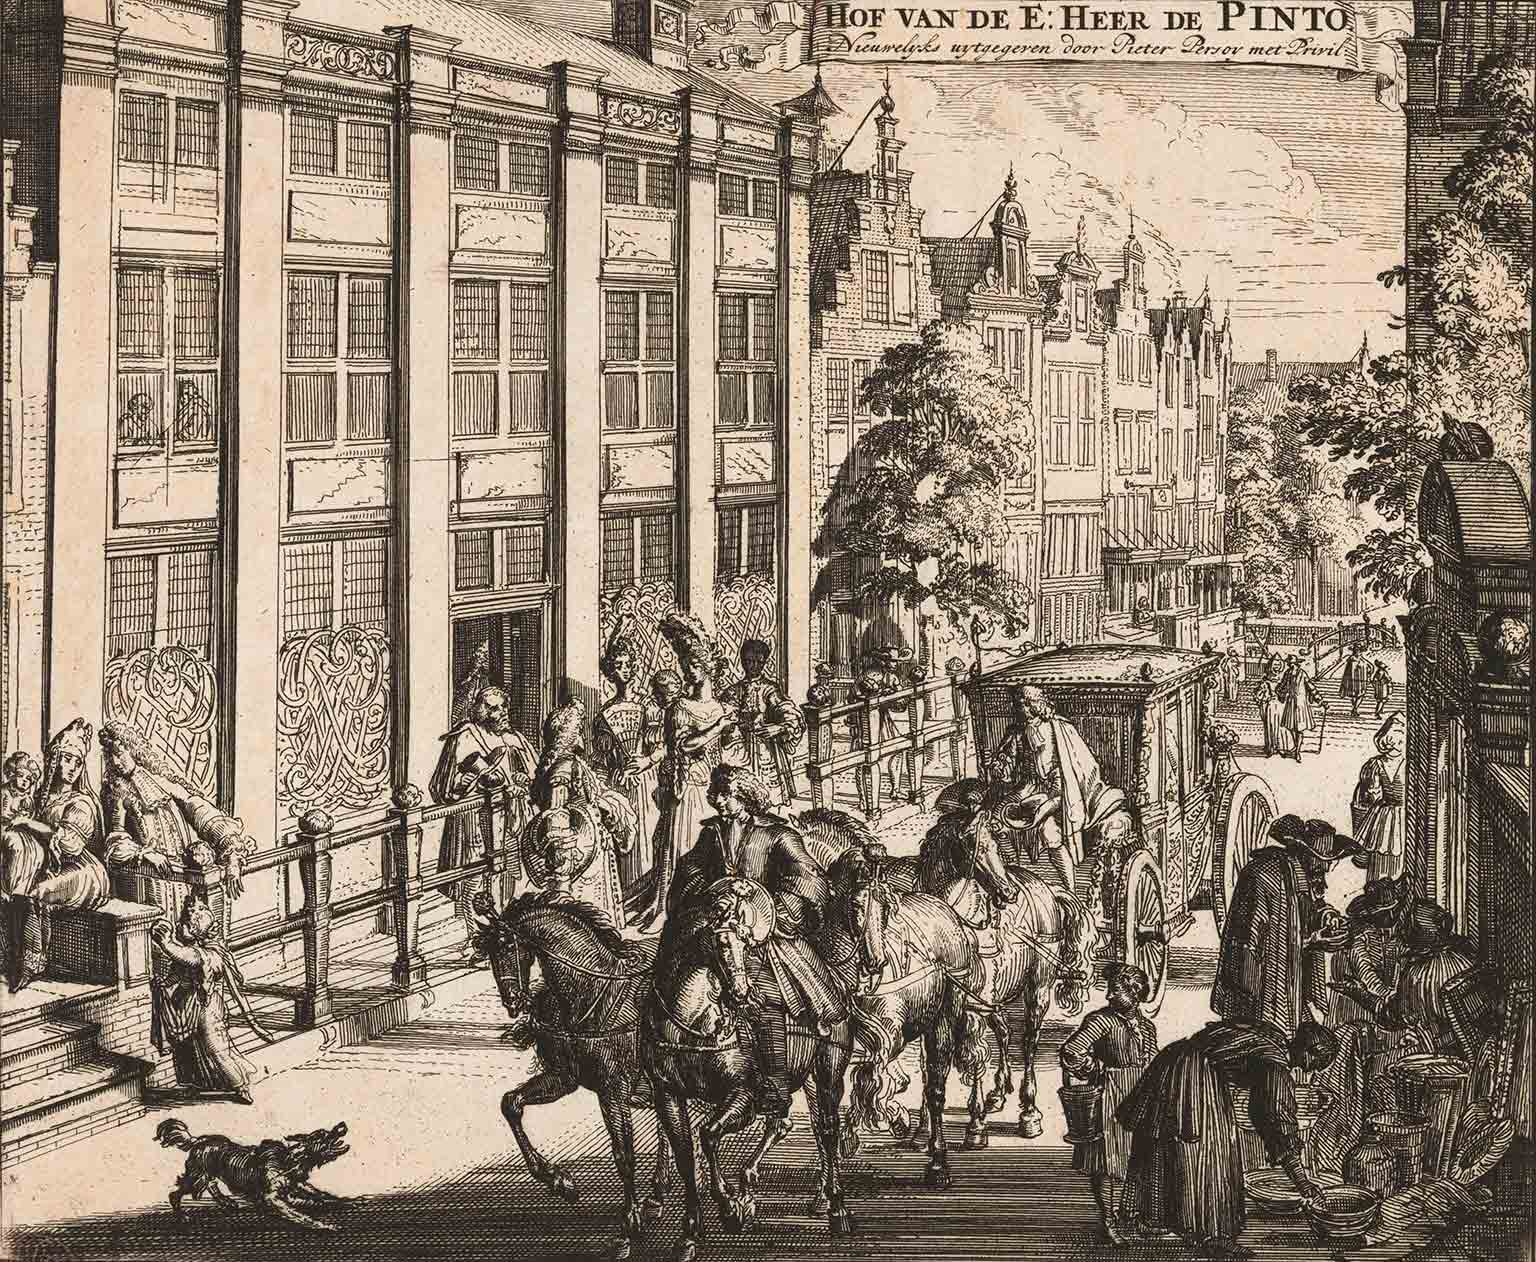 De Pinto house at Sint Antoniesbreestraat, Amsterdam, in 1695, engraving by Romeyn de Hooghe